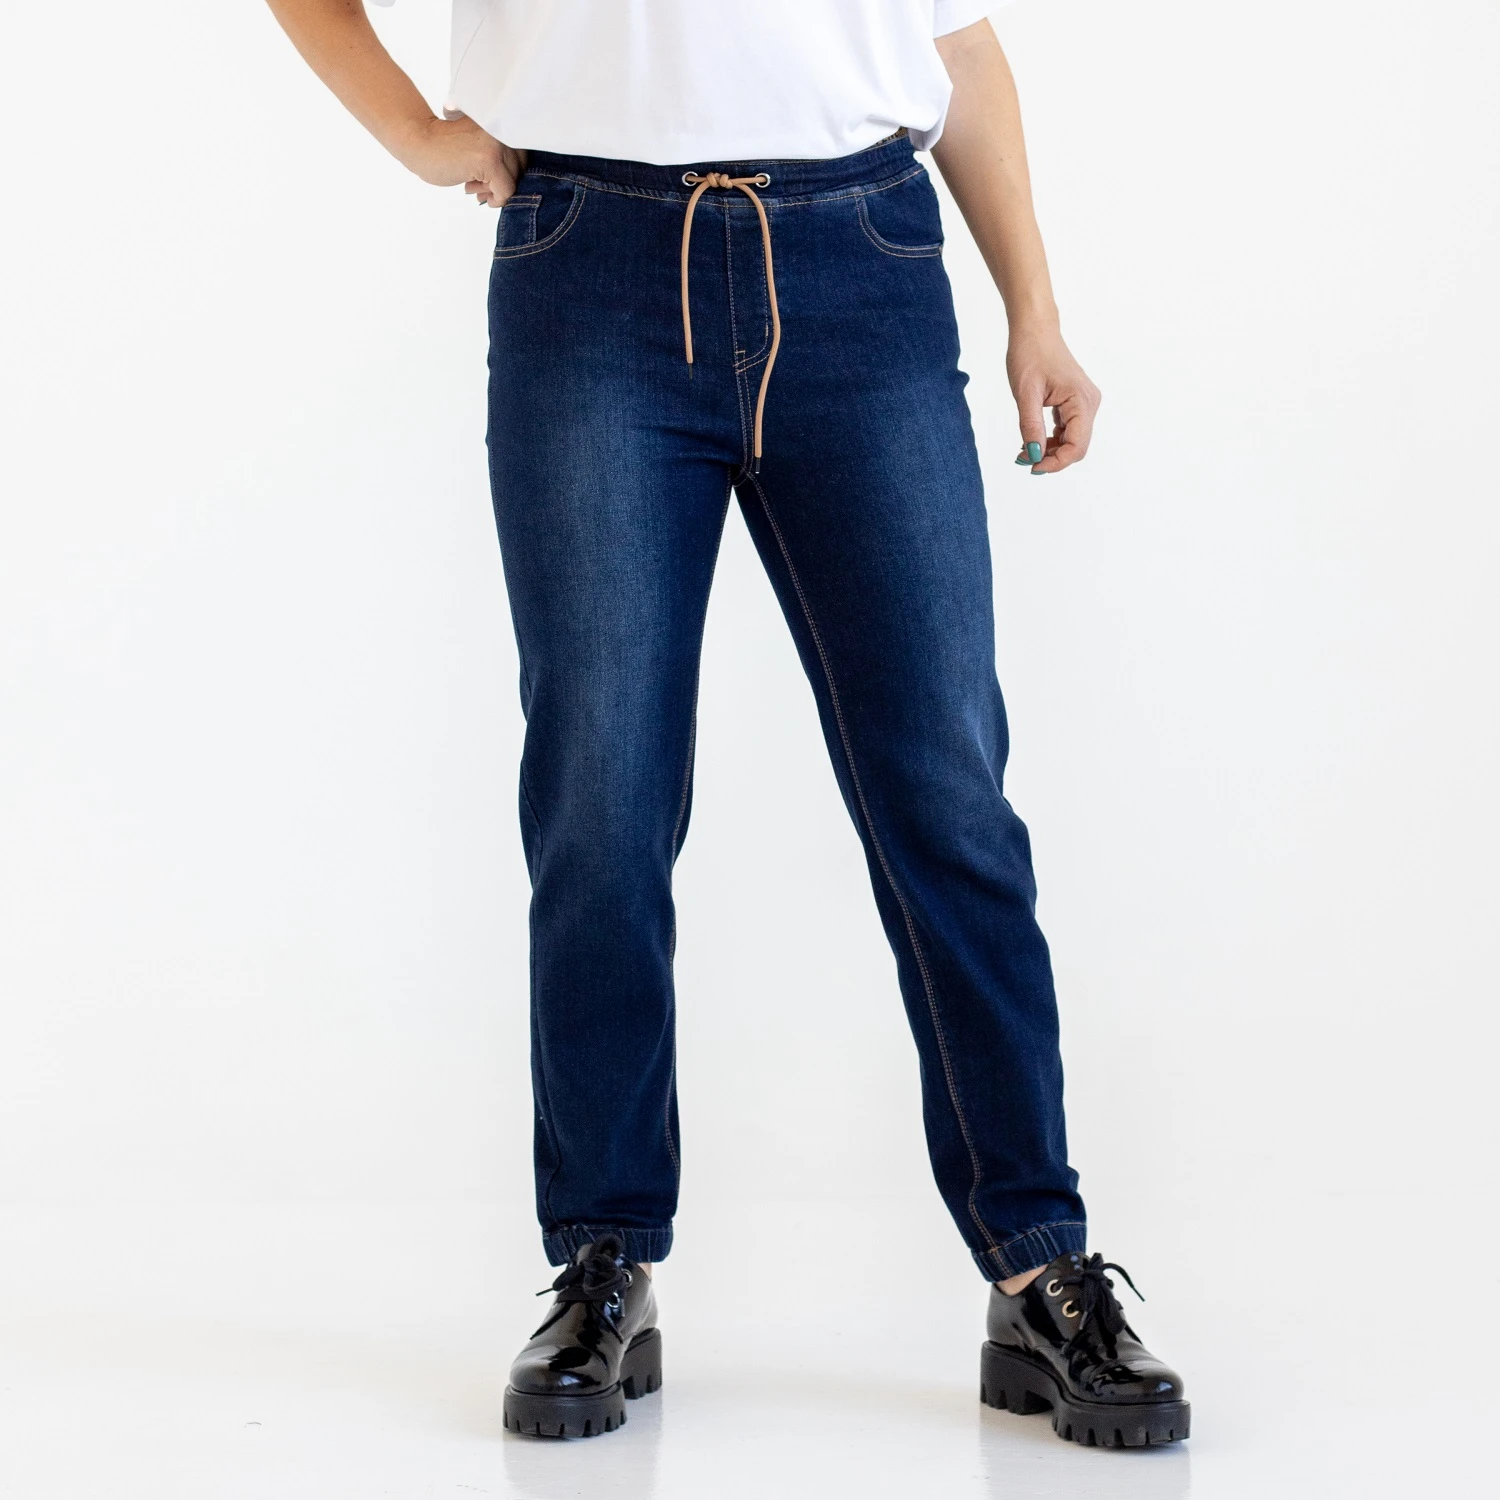 Pantalones para mujer, de corte alto, cinturón y puños de goma, tallas grandes, de algodón azul|Pantalones vaqueros| -